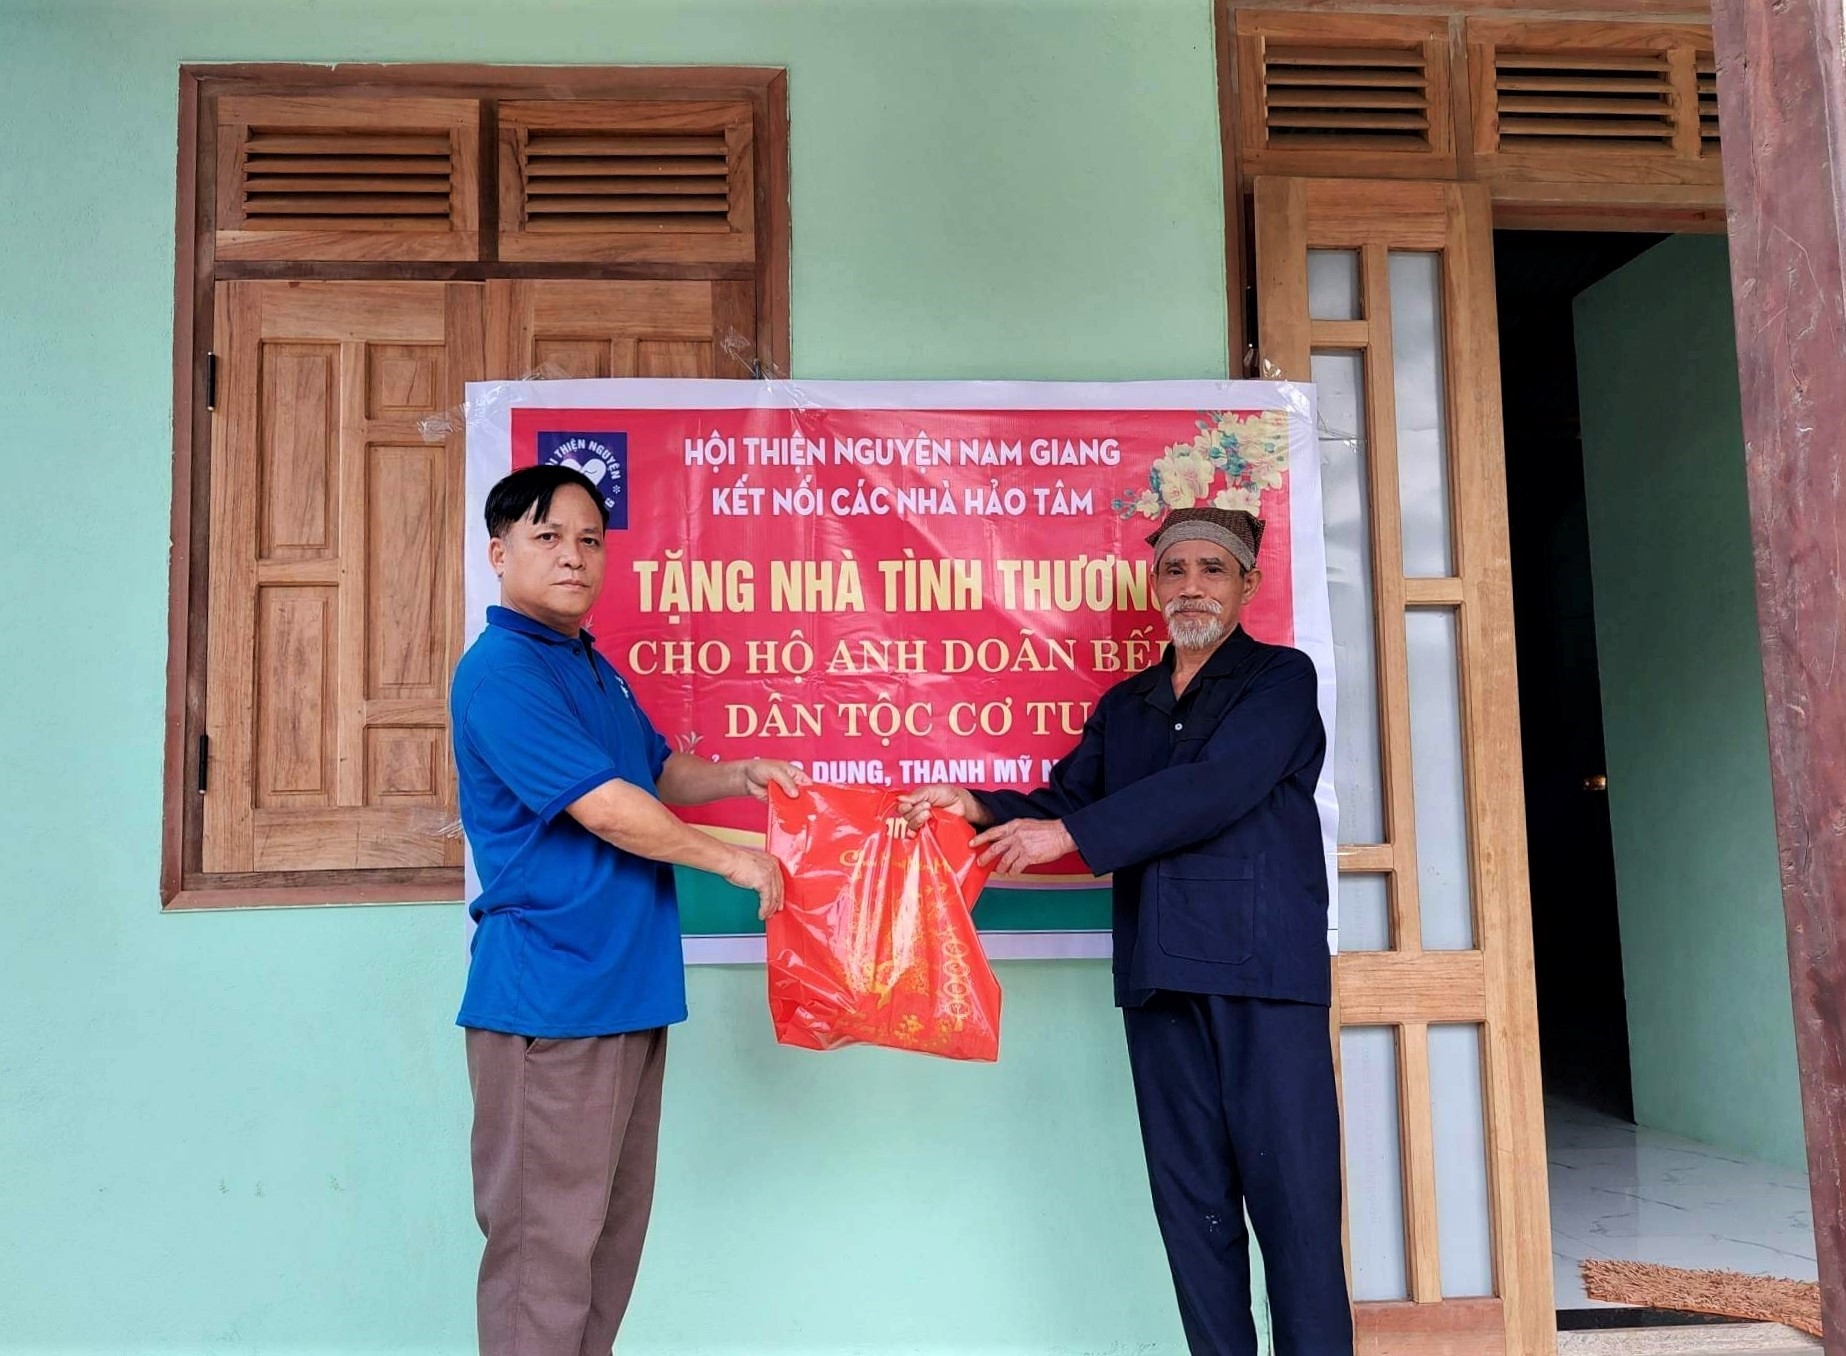 Ông Doãn Bếp (bên phải) đón nhận món quà tết động viên từ đại diện Hội Thiện nguyện Nam Giang trong ngày bàn giao ngôi nhà tình thương. Ảnh: Đ.N